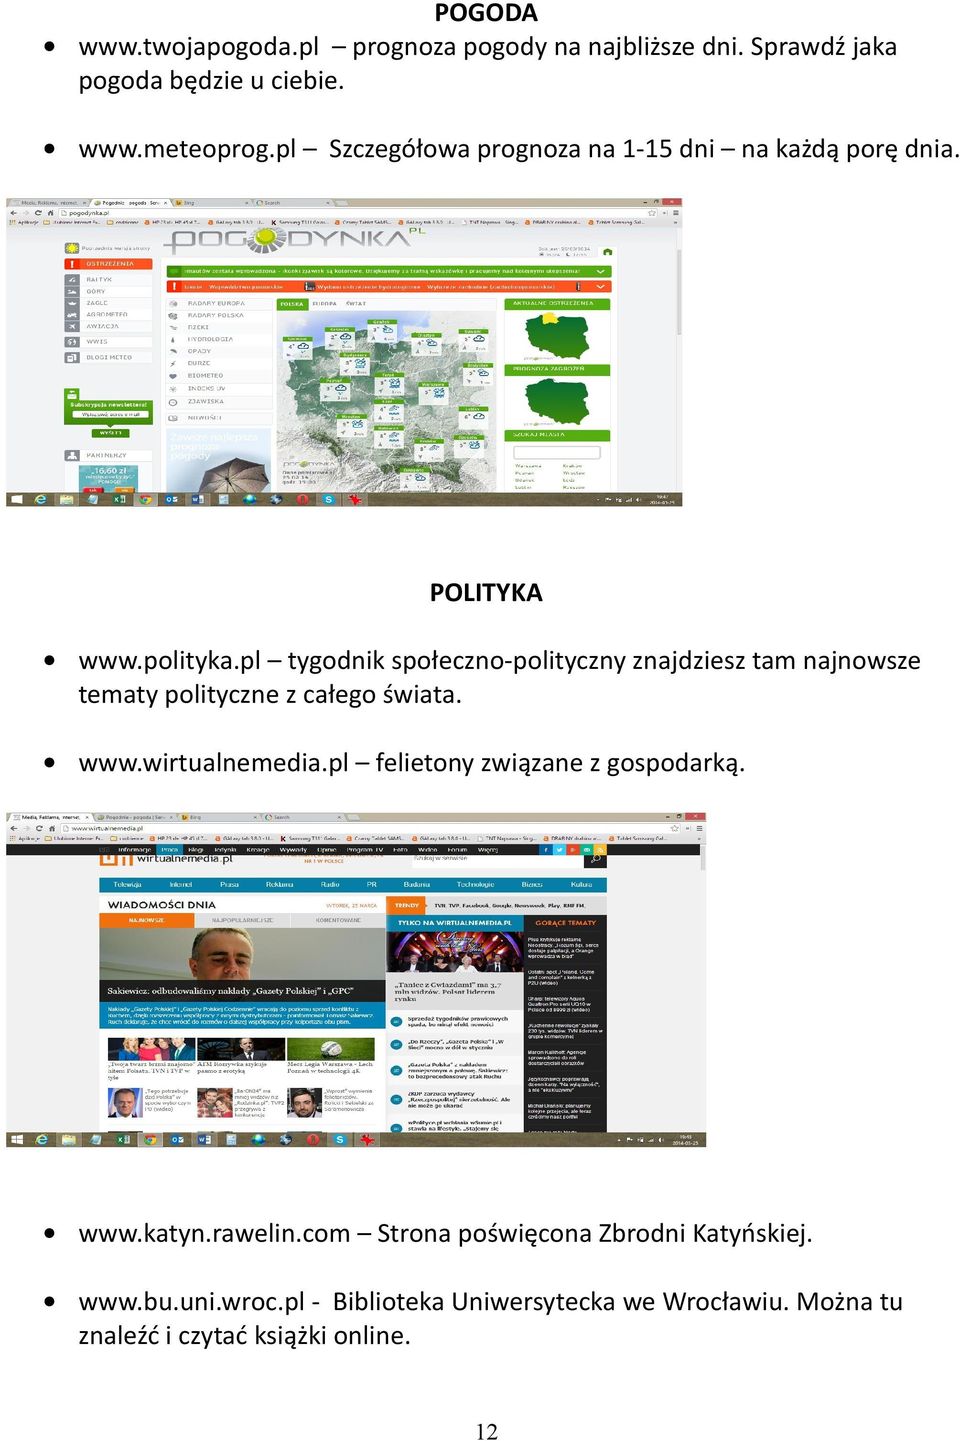 pl tygodnik społeczno-polityczny znajdziesz tam najnowsze tematy polityczne z całego świata. www.wirtualnemedia.